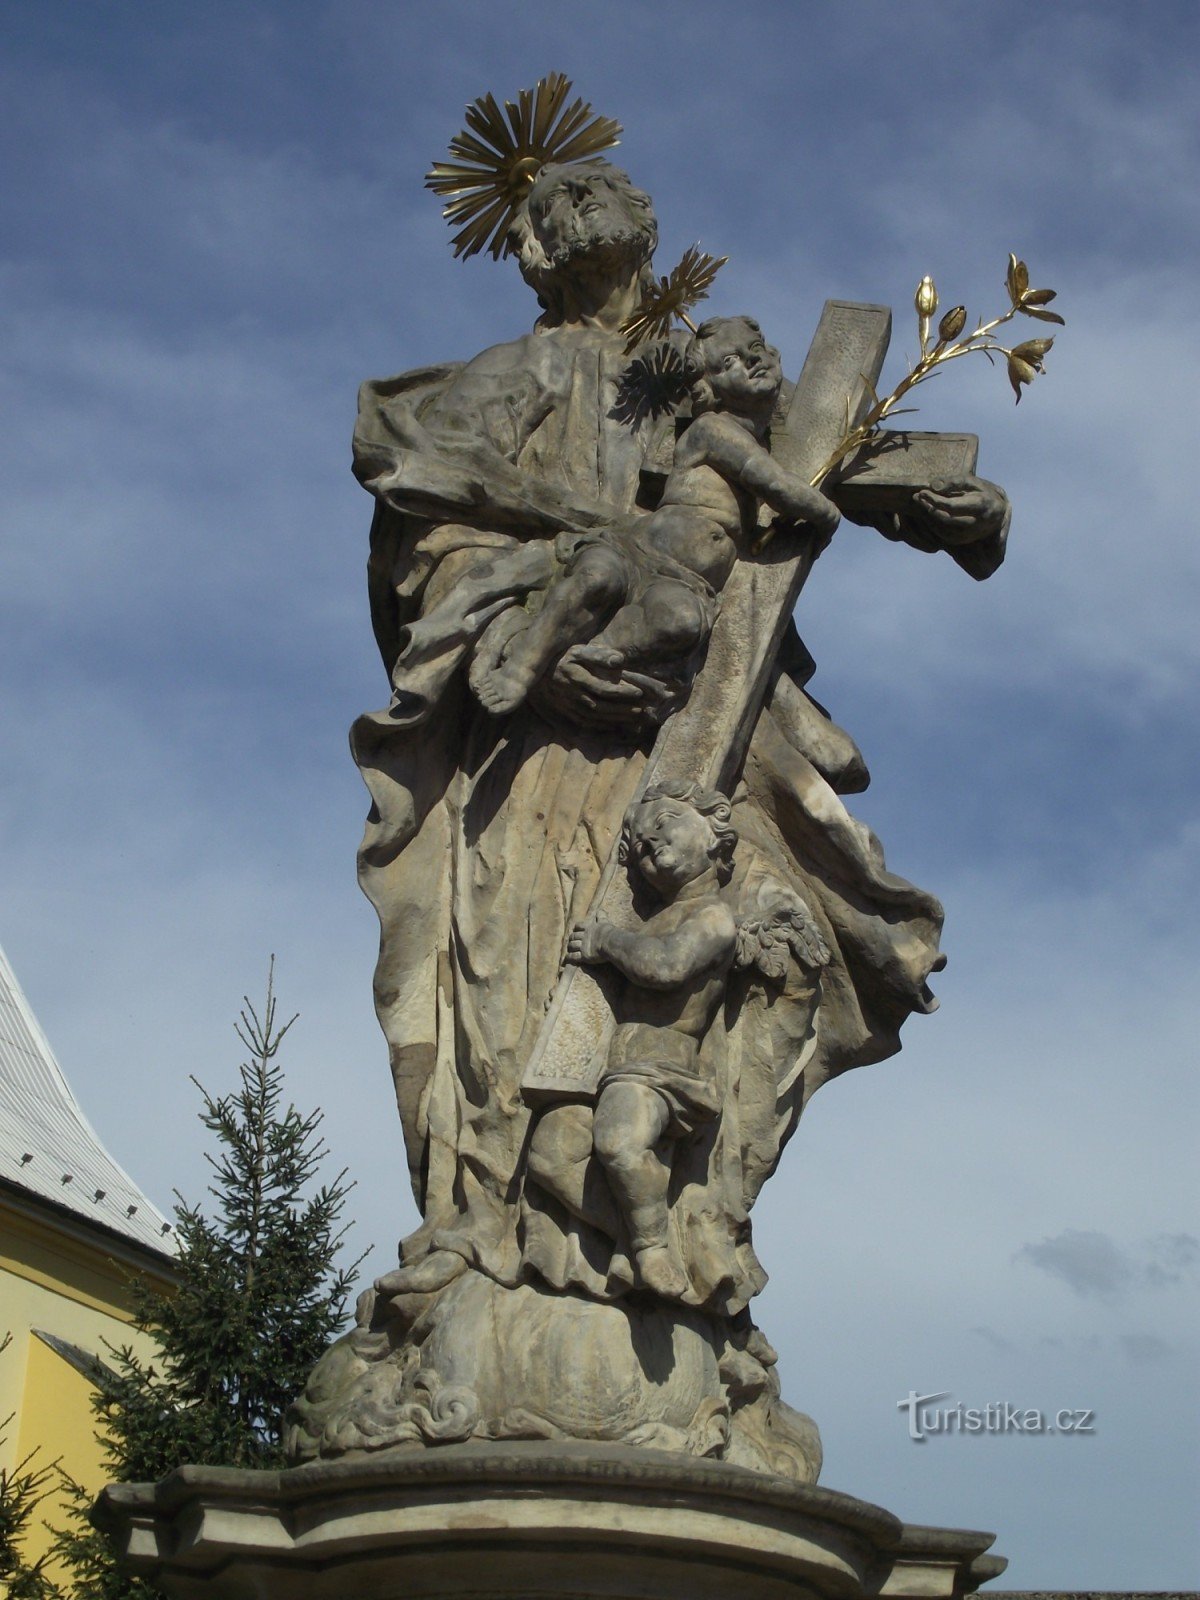 Ruda nad Moravou - statyn av St. Josef